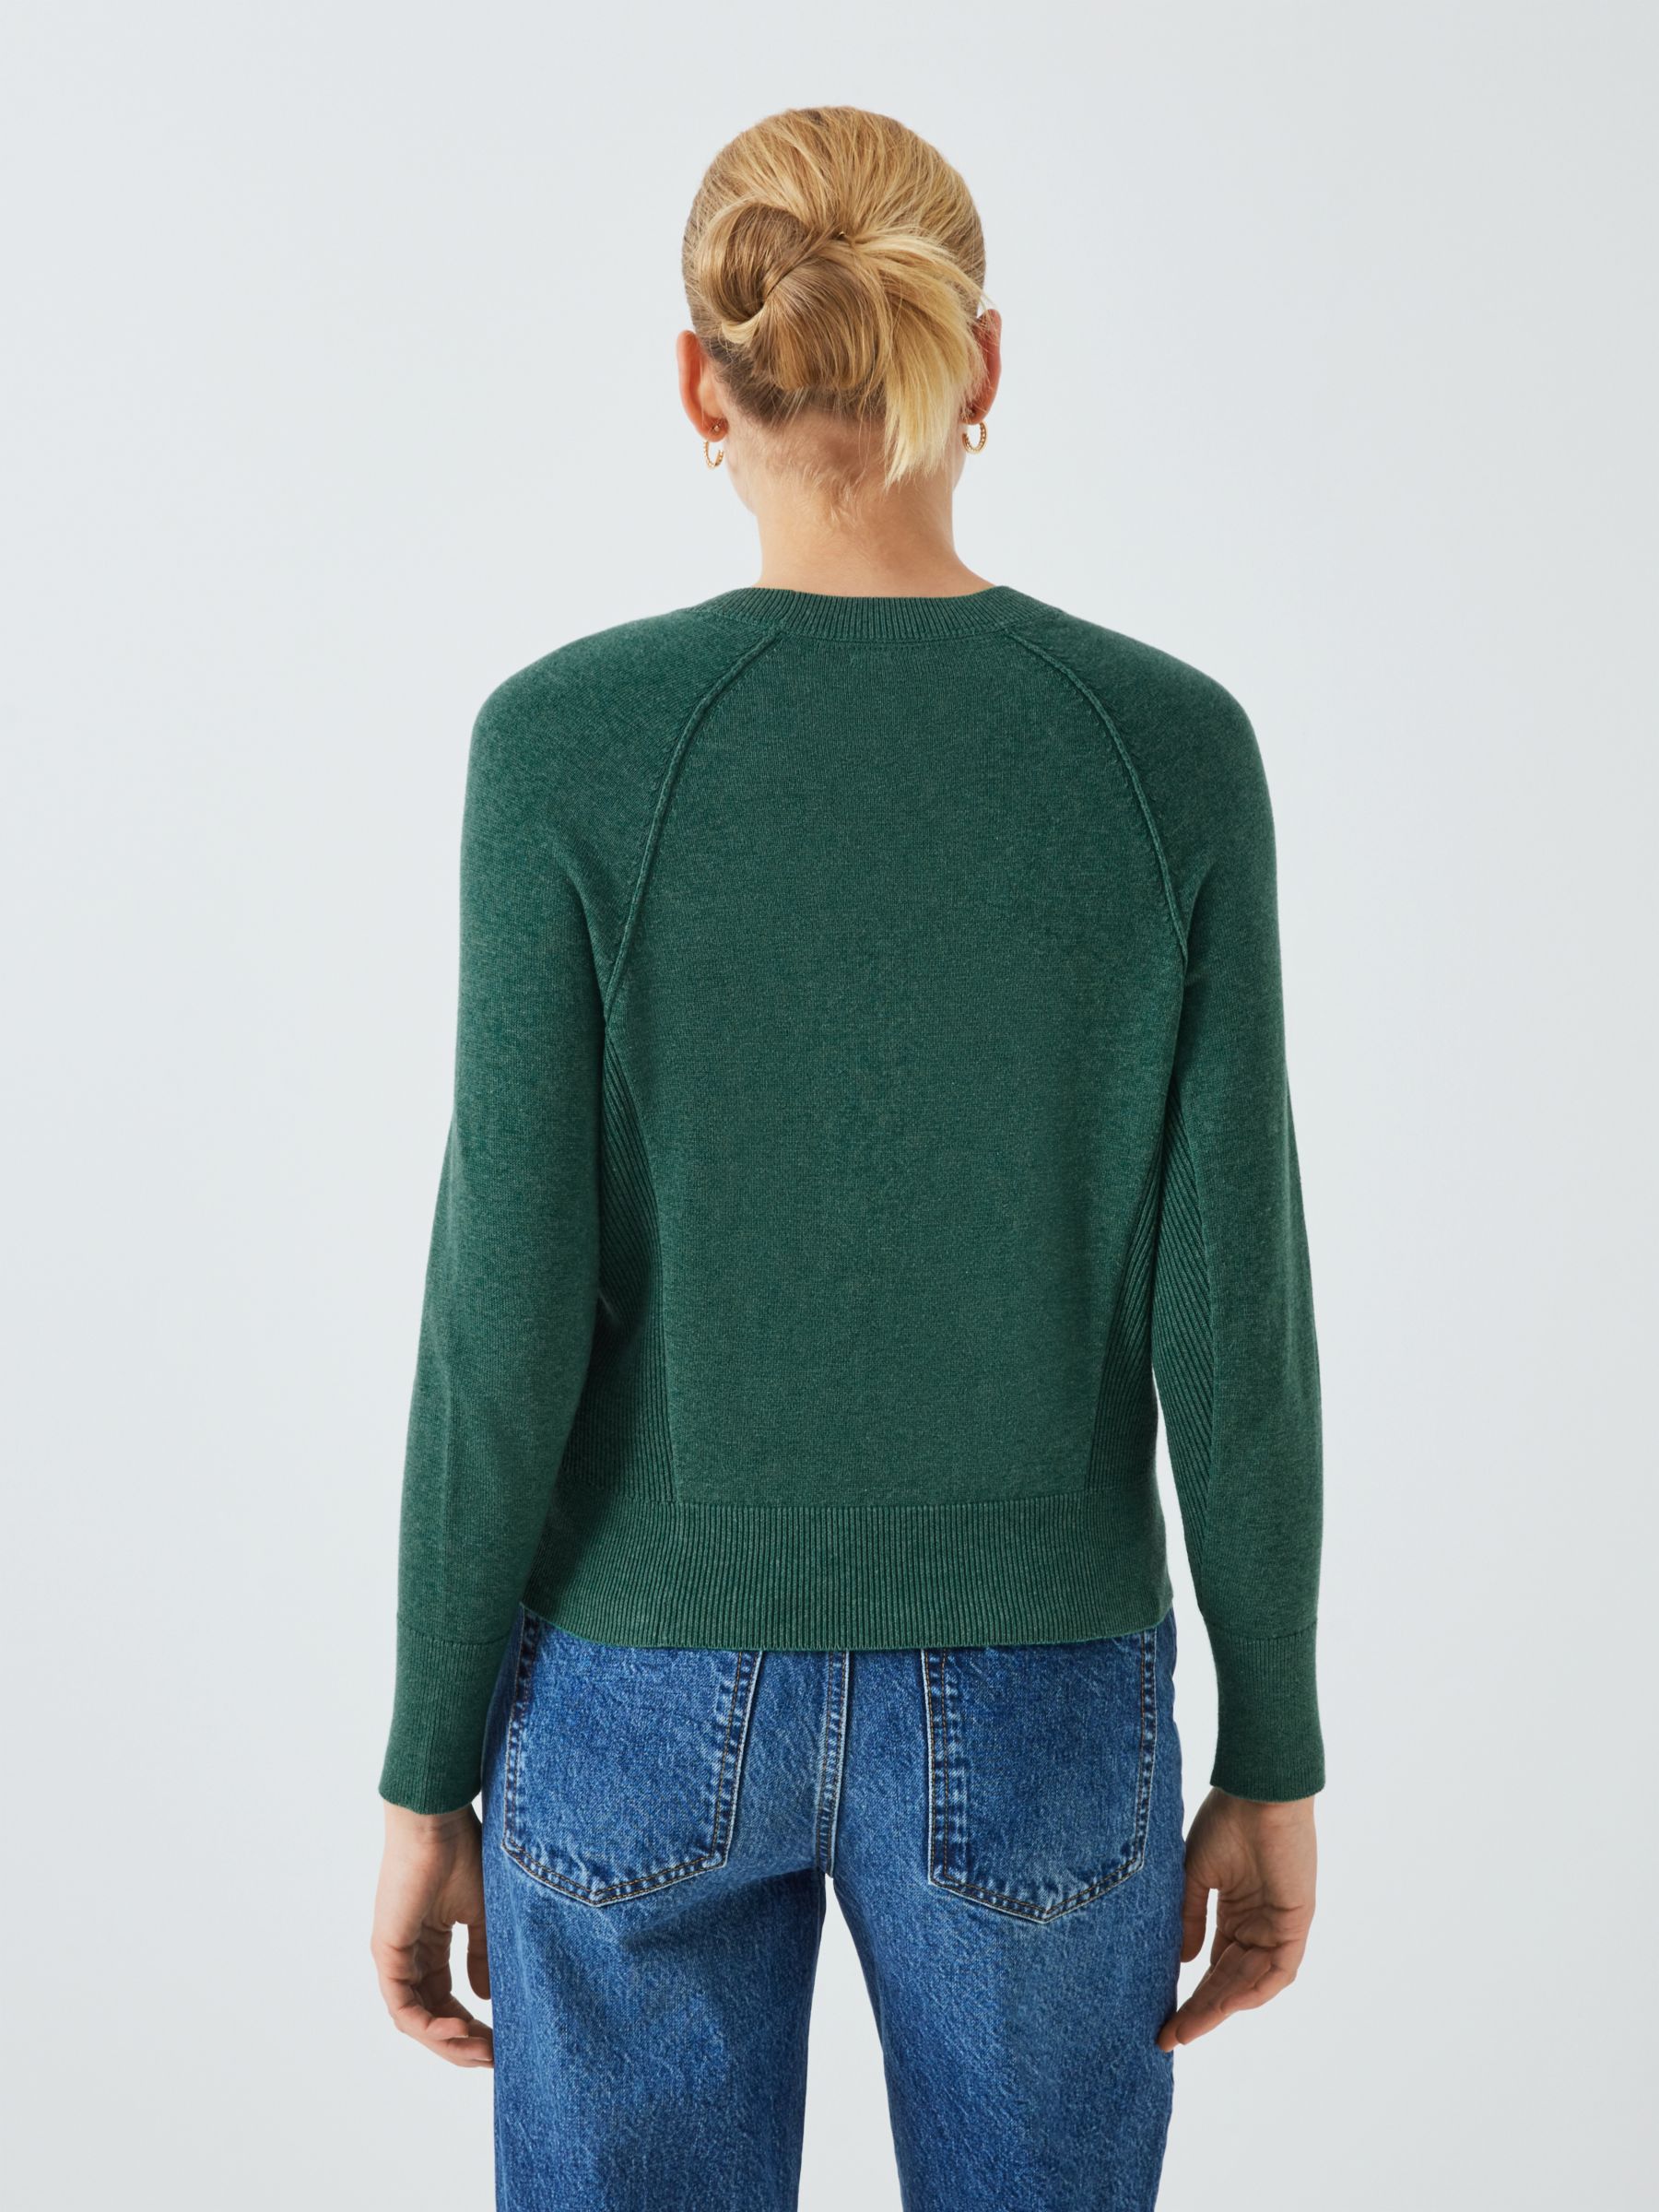 John Lewis Cotton Knitted Sweater, Smoke Pine, S